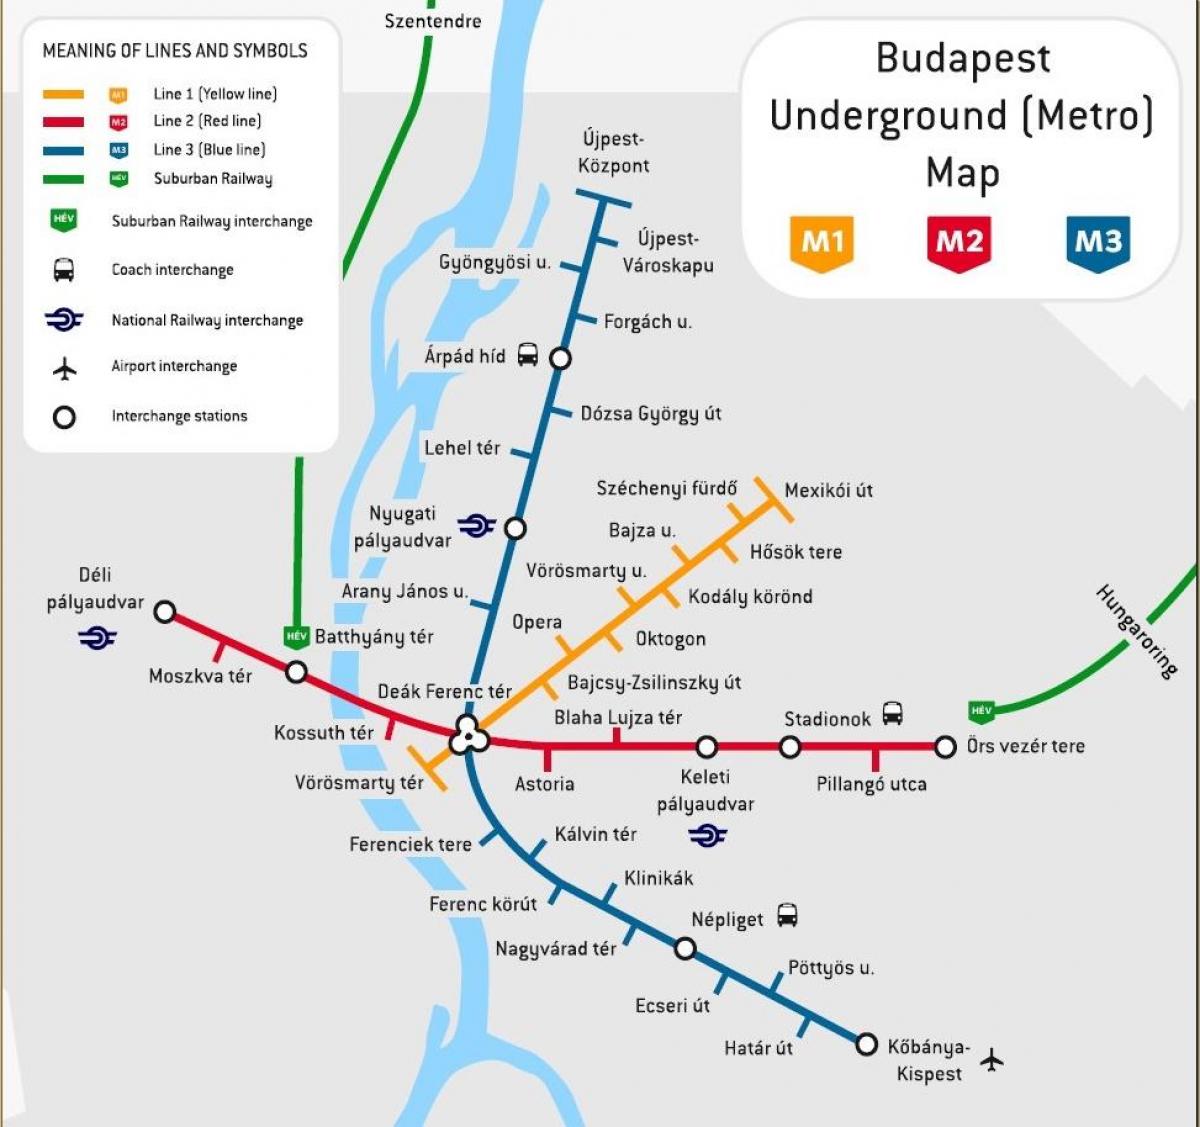 kort over budapest station